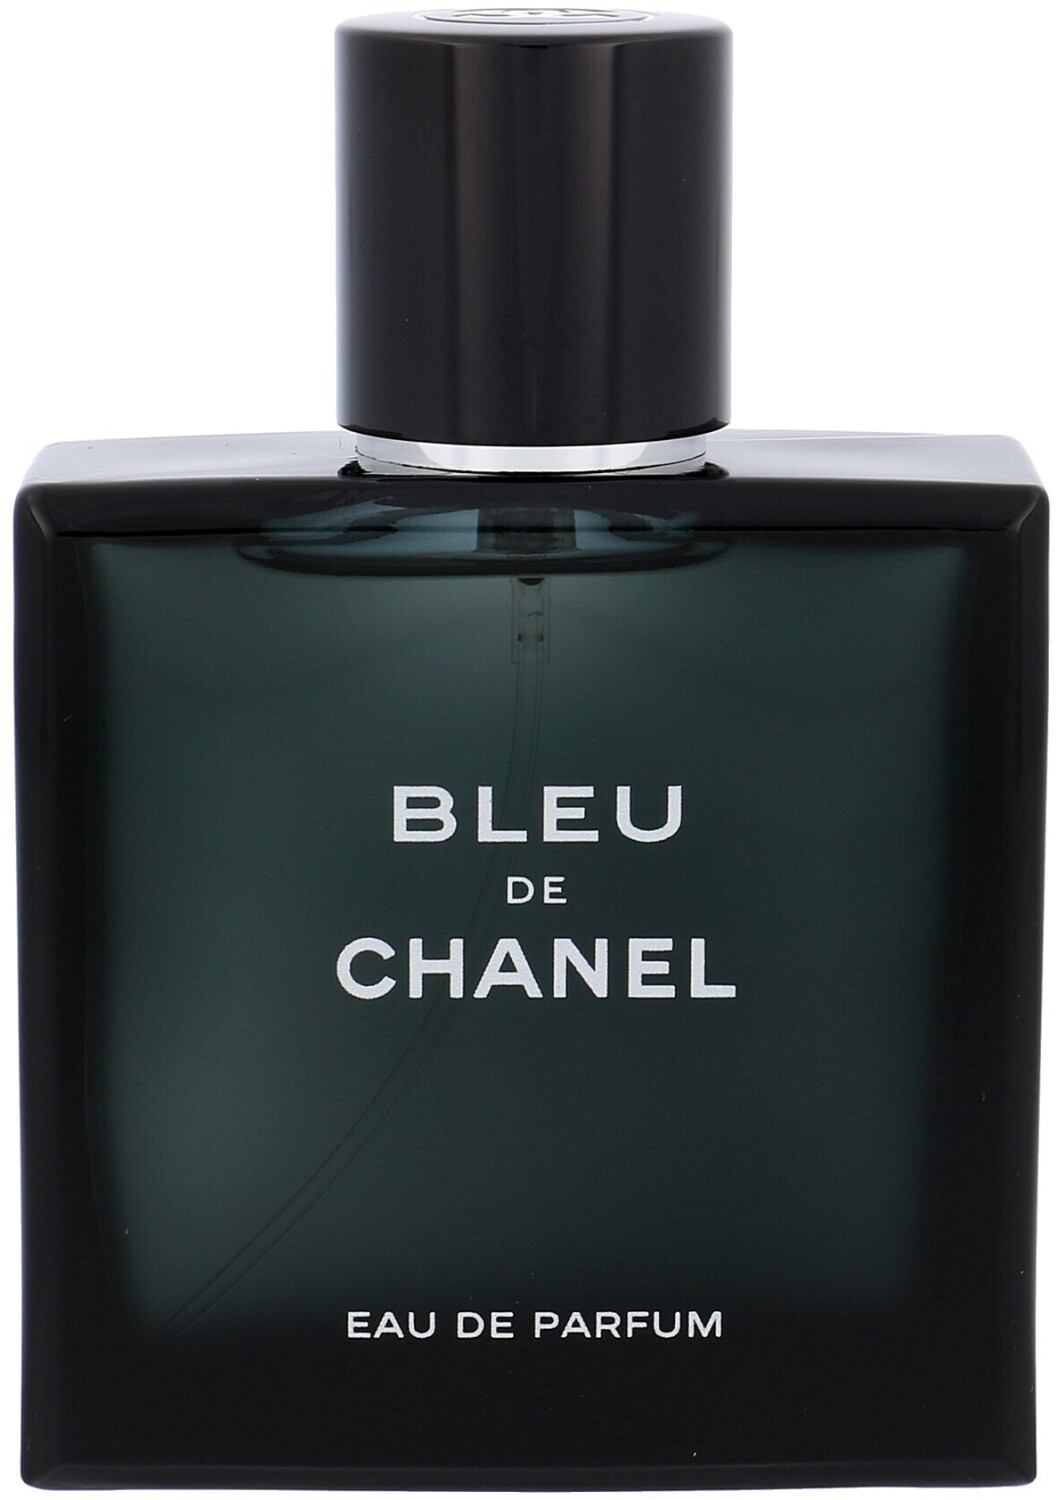 Buy Chanel Bleu de Chanel Eau de Parfum from £69.99 (Today) – Best